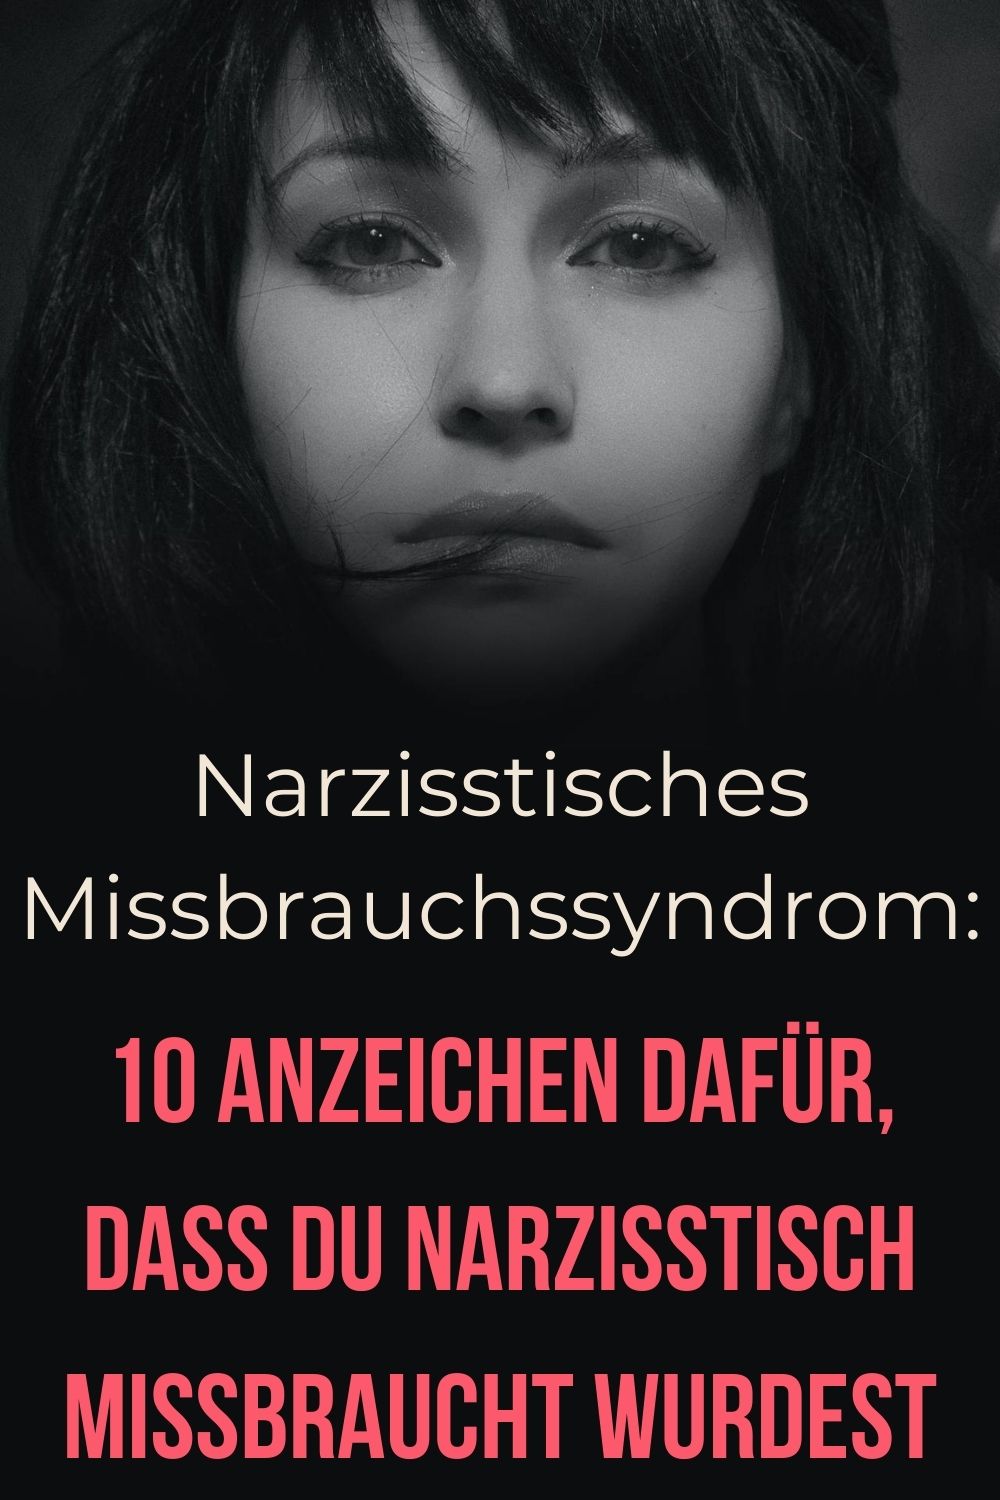 Narzisstisches-Missbrauchssyndrom-10-Anzeichen-dafuer-dass-du-narzisstisch-missbraucht-wurdest